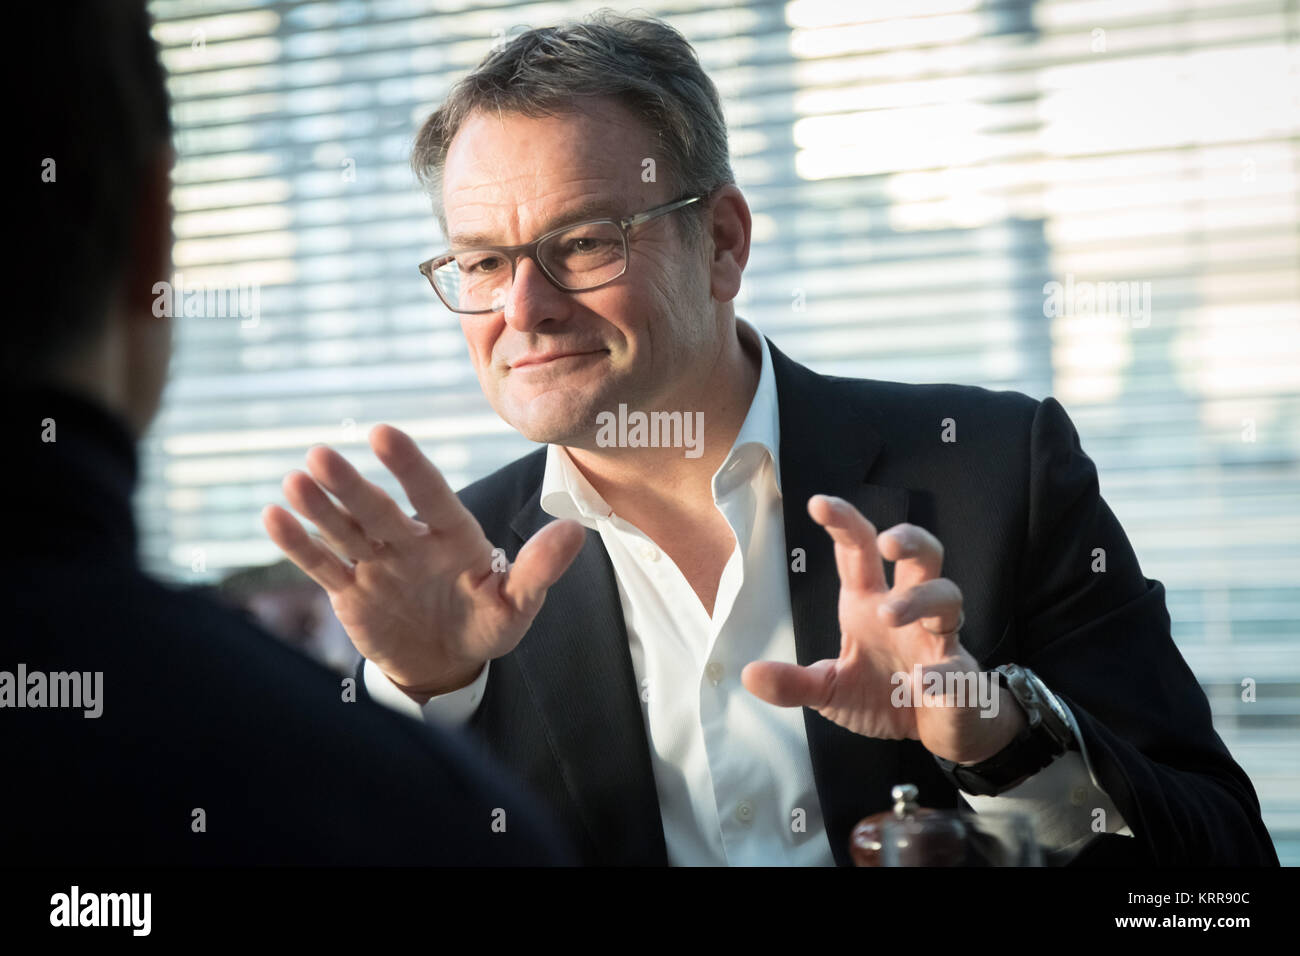 Wim Dejonghe, Senior Partner von Allen & Overy LLP internationale Kanzlei in London, Großbritannien. Stockfoto